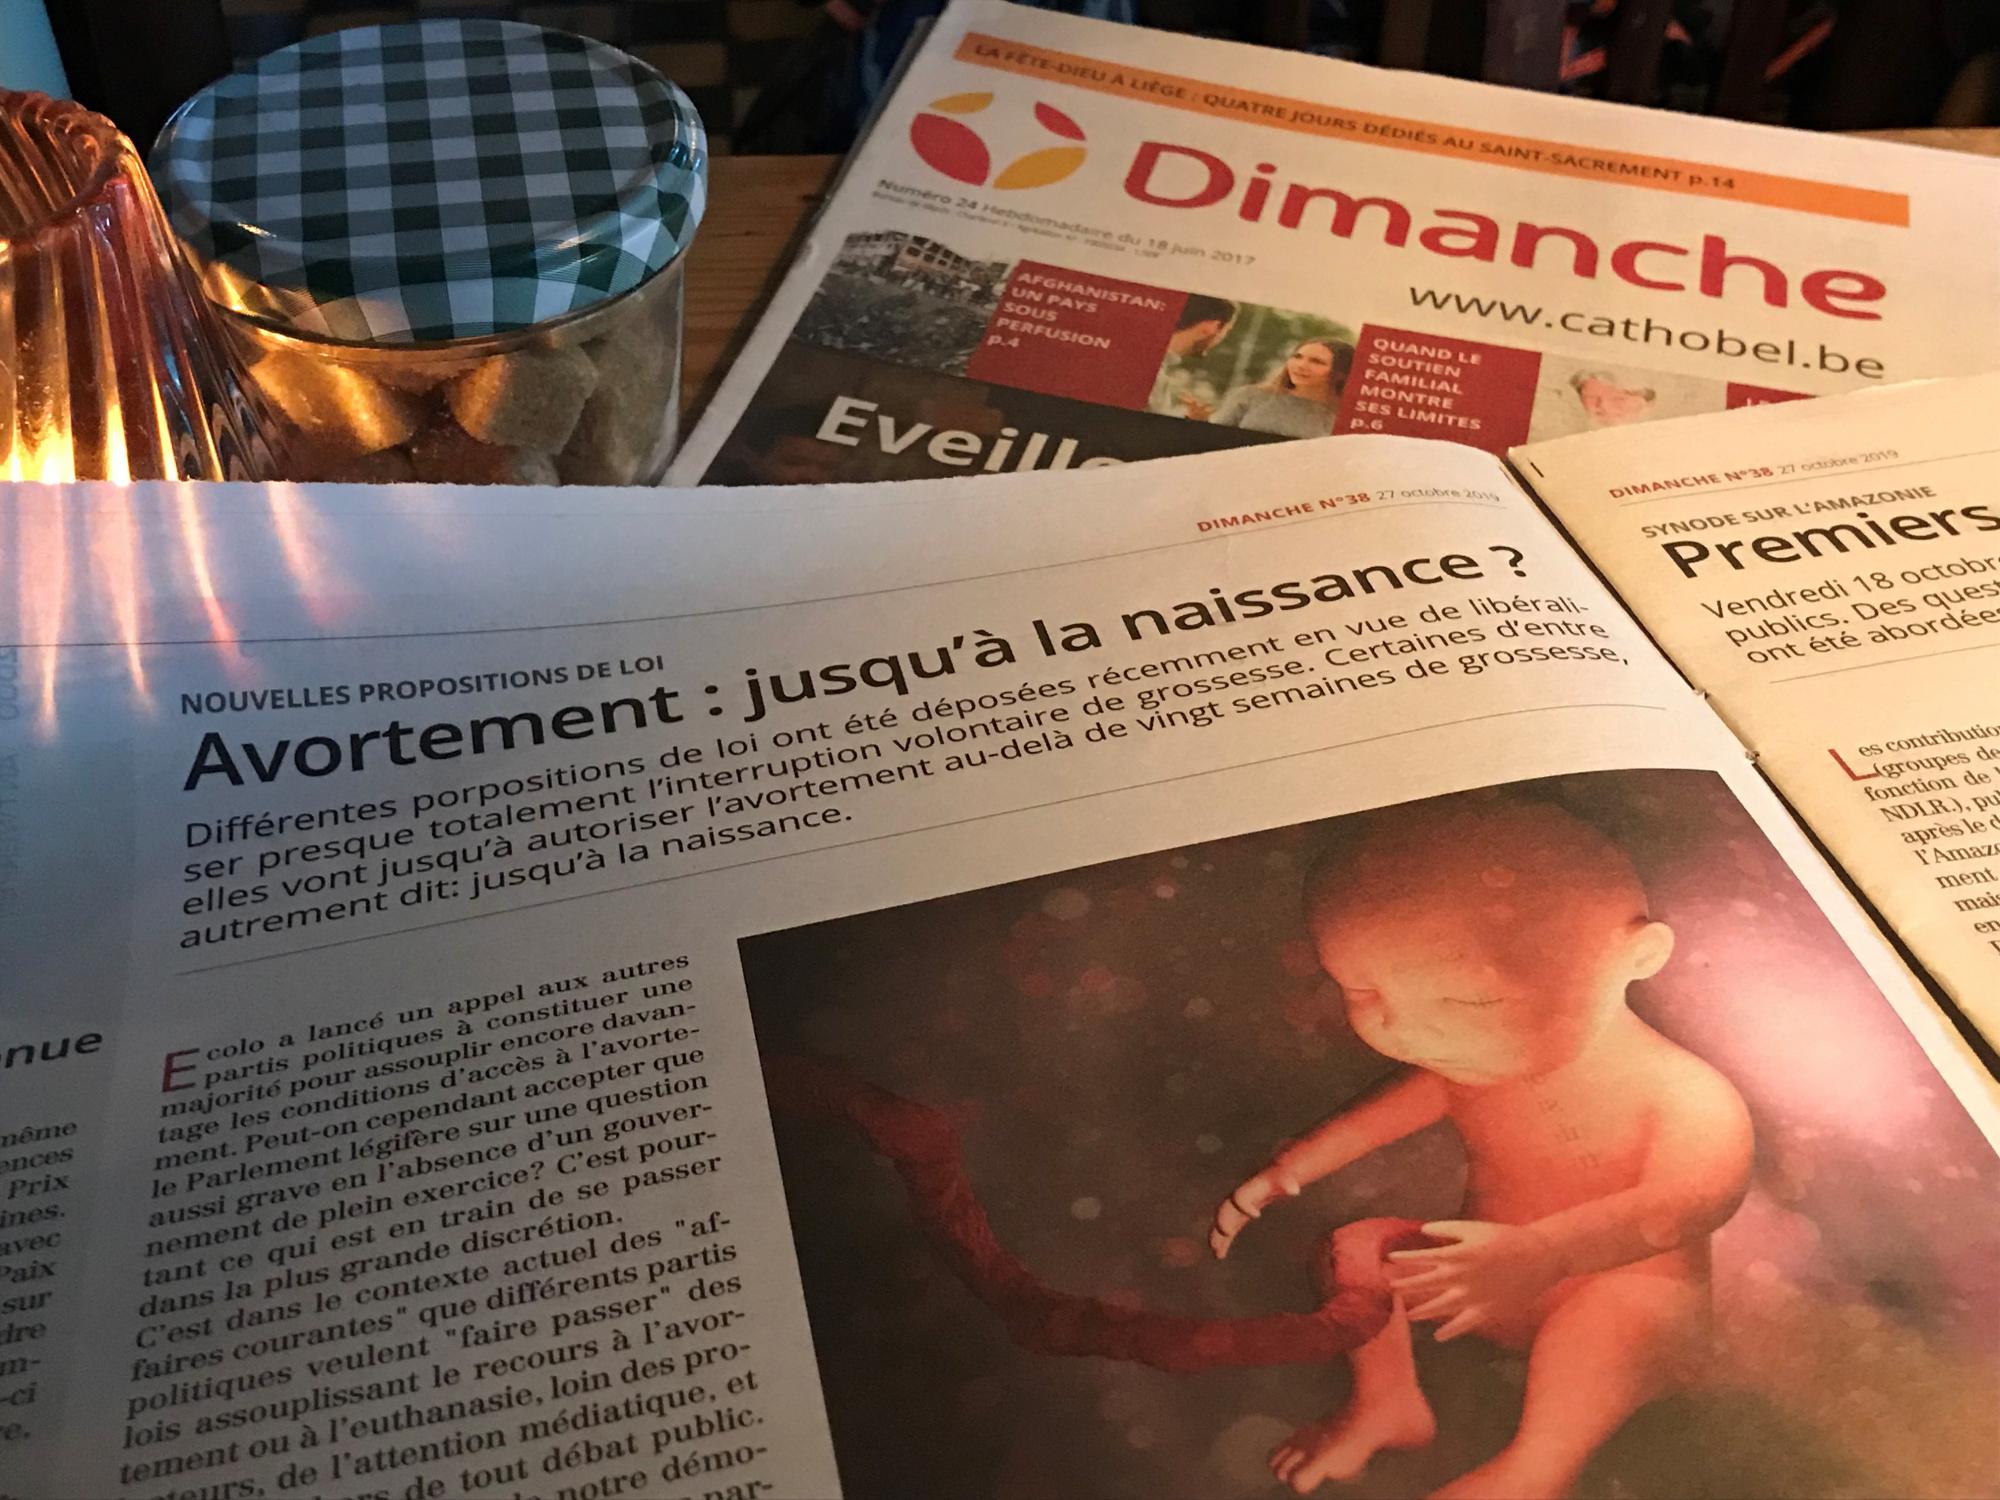 Christophe Herinckx waarschuwt in Dimanche, de Franstalige pendant van Kerk & Leven, vorige week al voor de plannen van bepaalde politieke partijen om de abortuswetgeving andermaal op te rekken